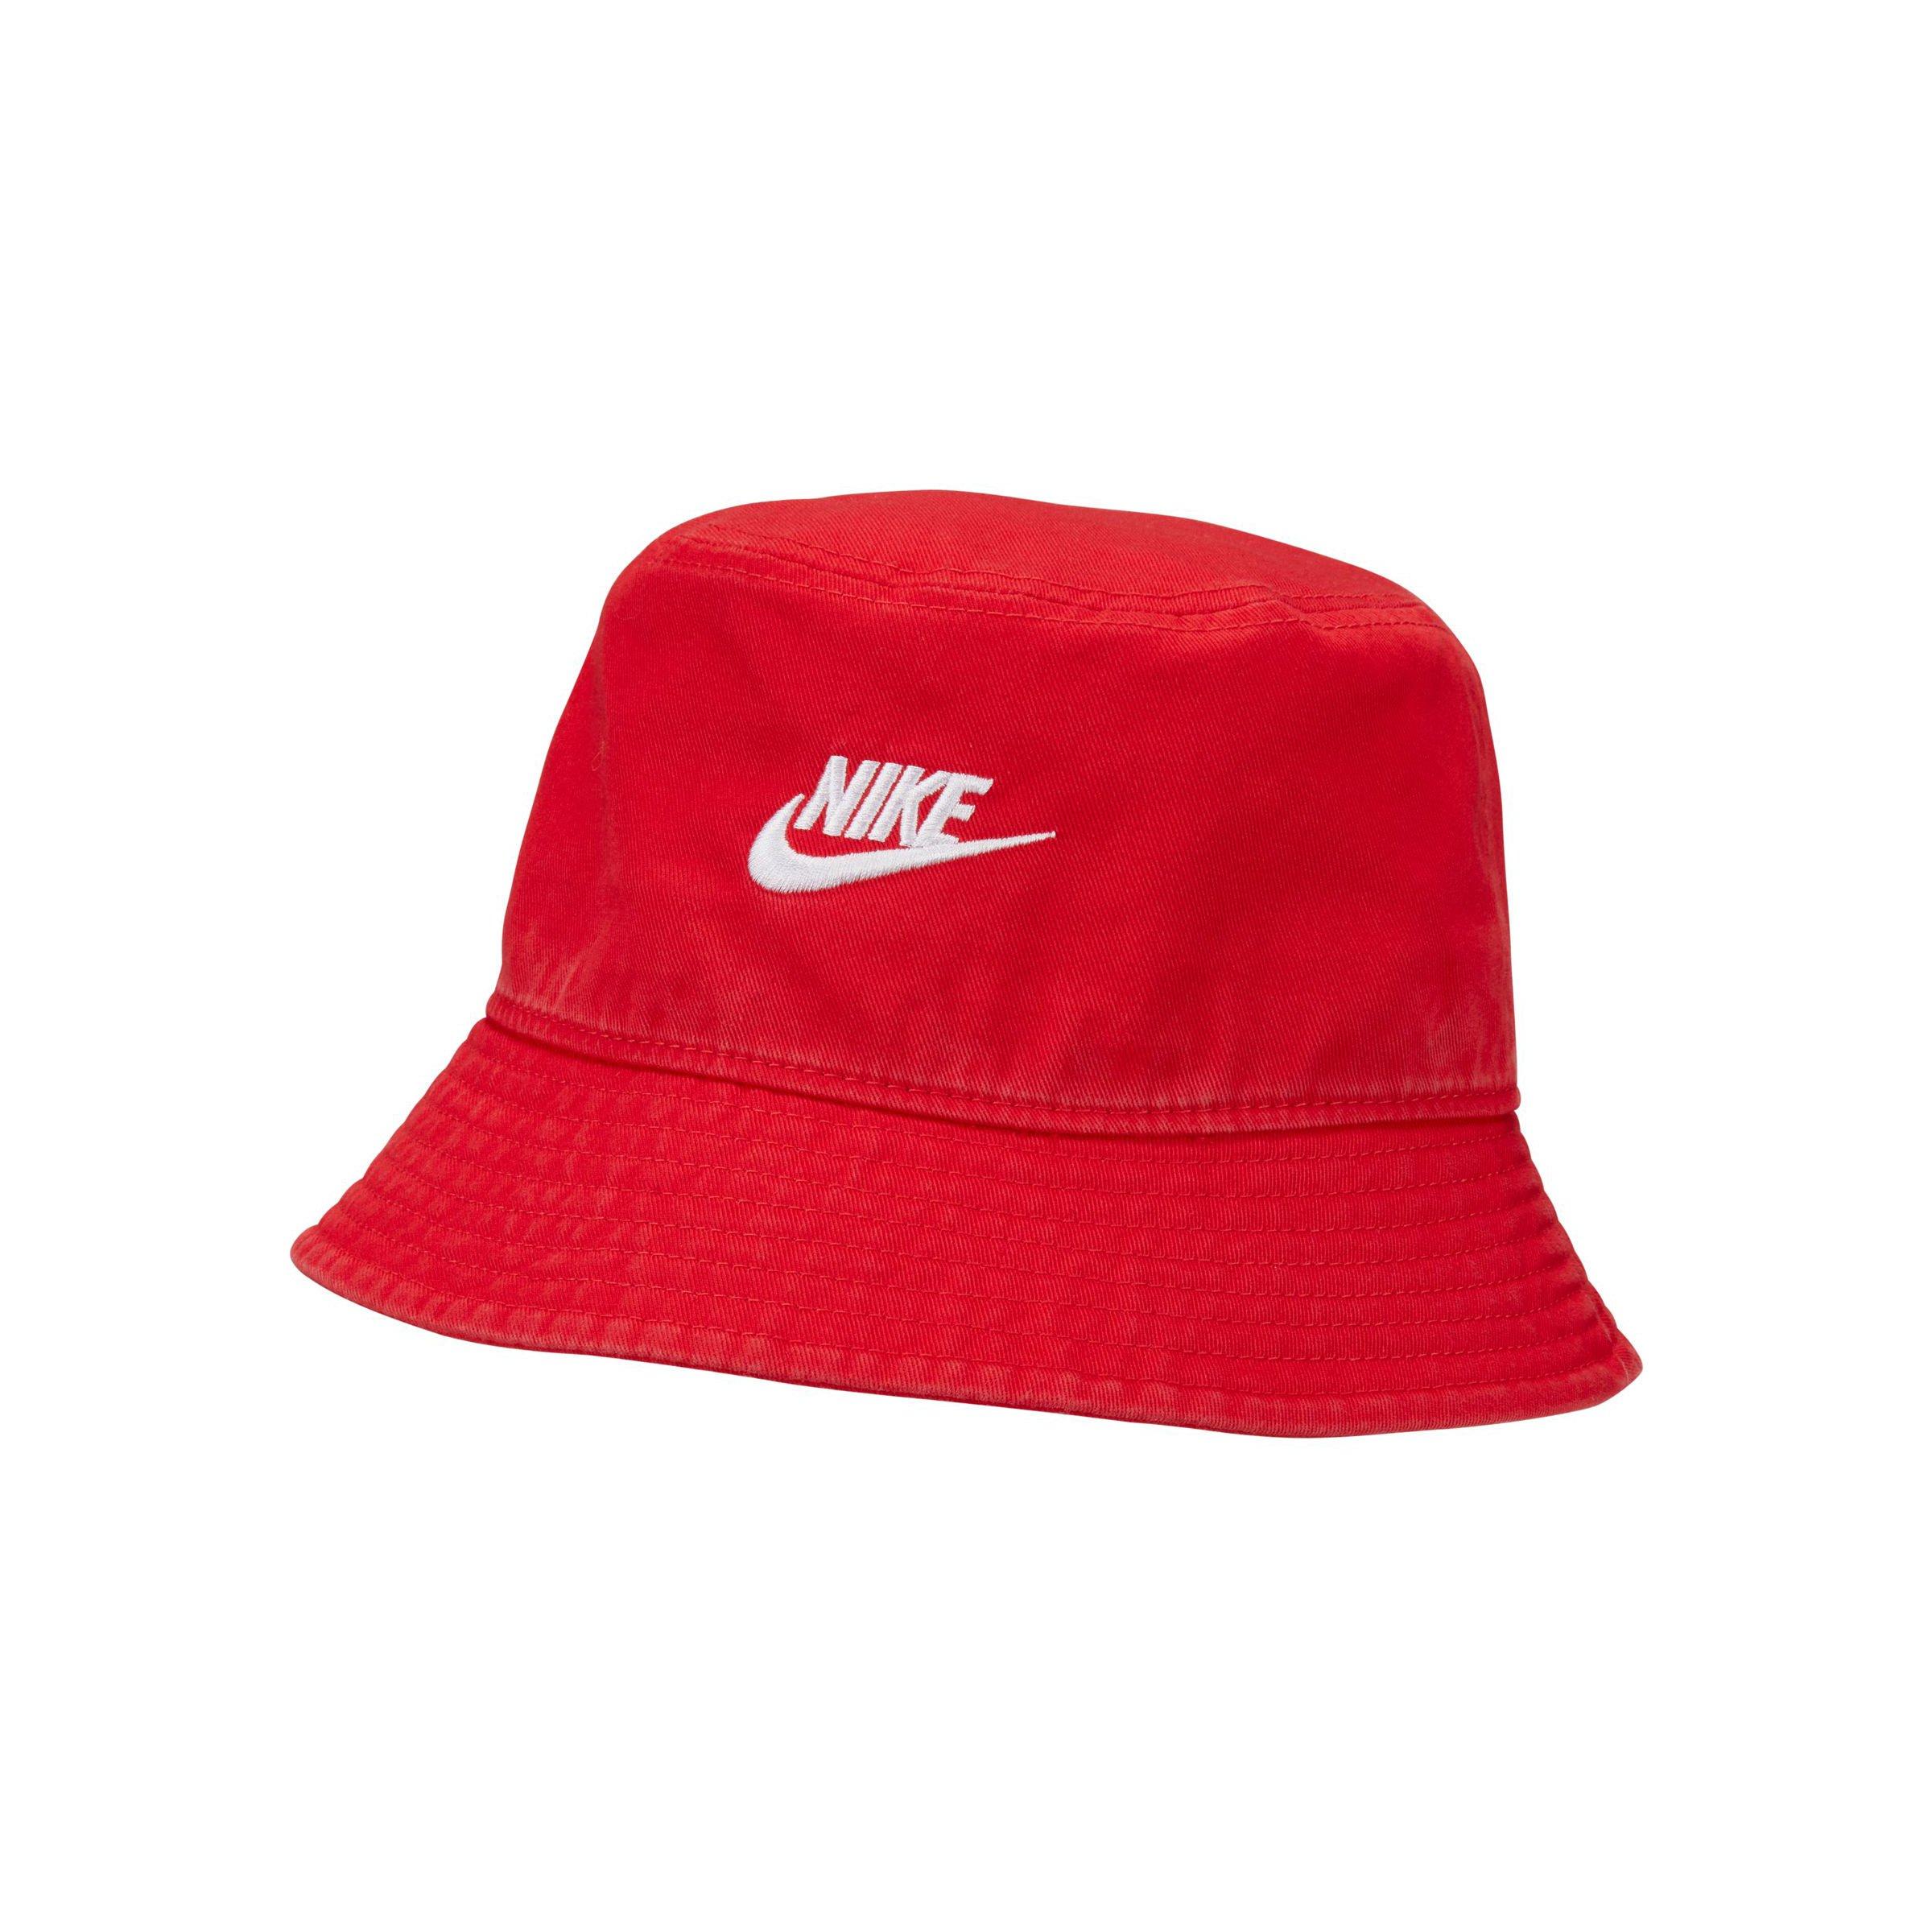 Nike Sportswear Bucket Hat - Red - Hibbett